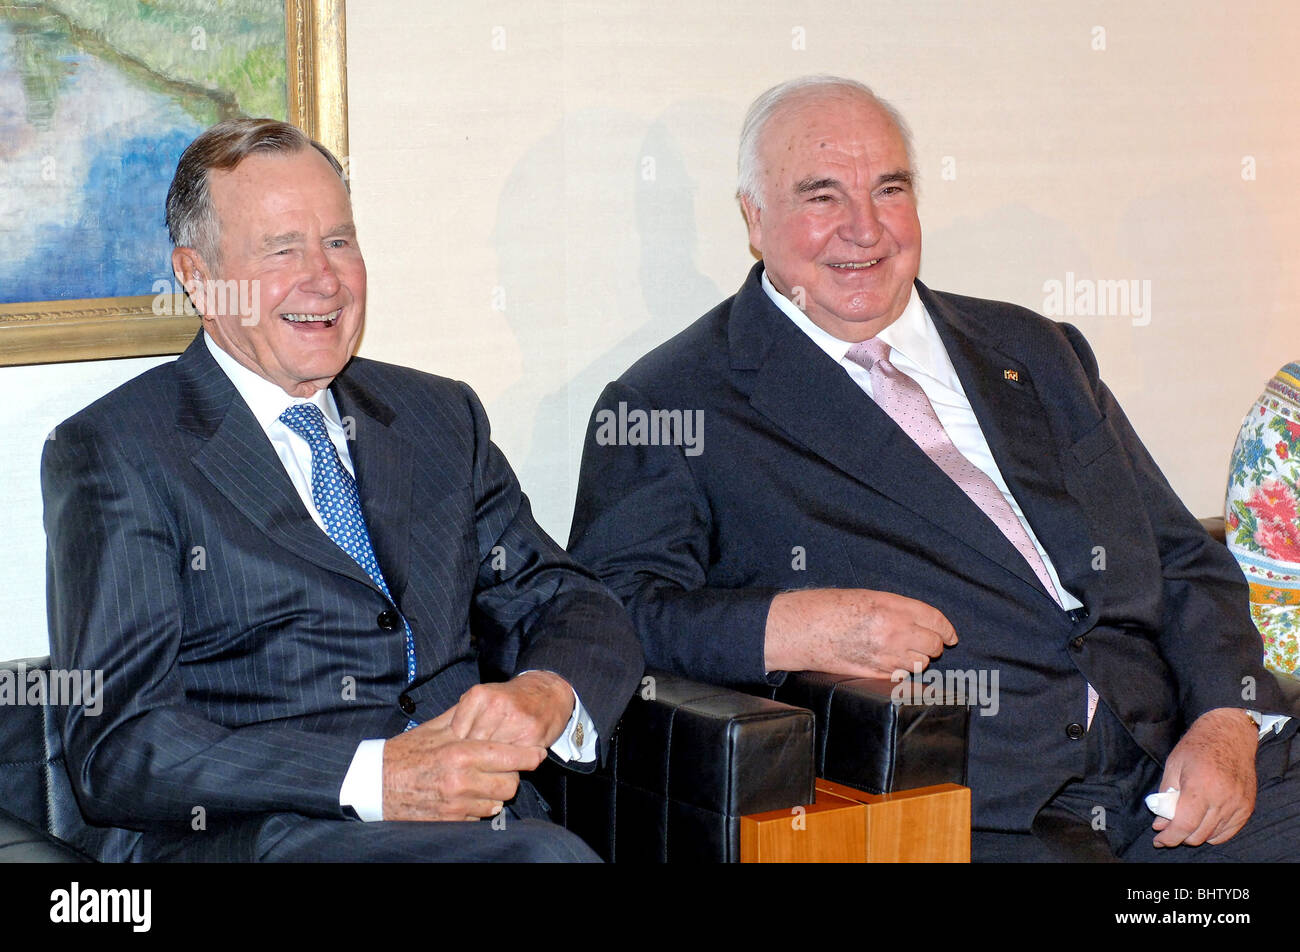 Αποτέλεσμα εικόνας για Helmut Kohl photo gallery